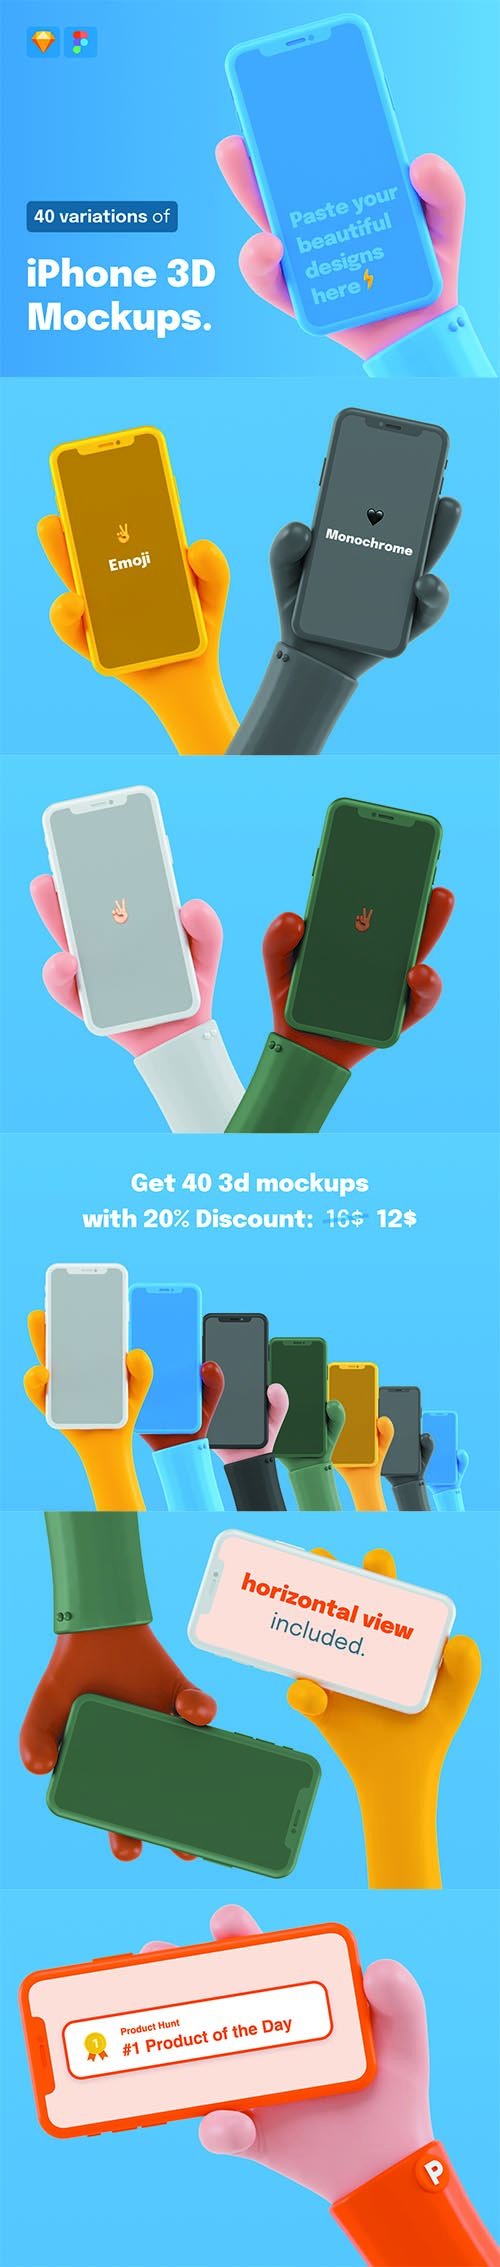 iPhone 3D Mockups